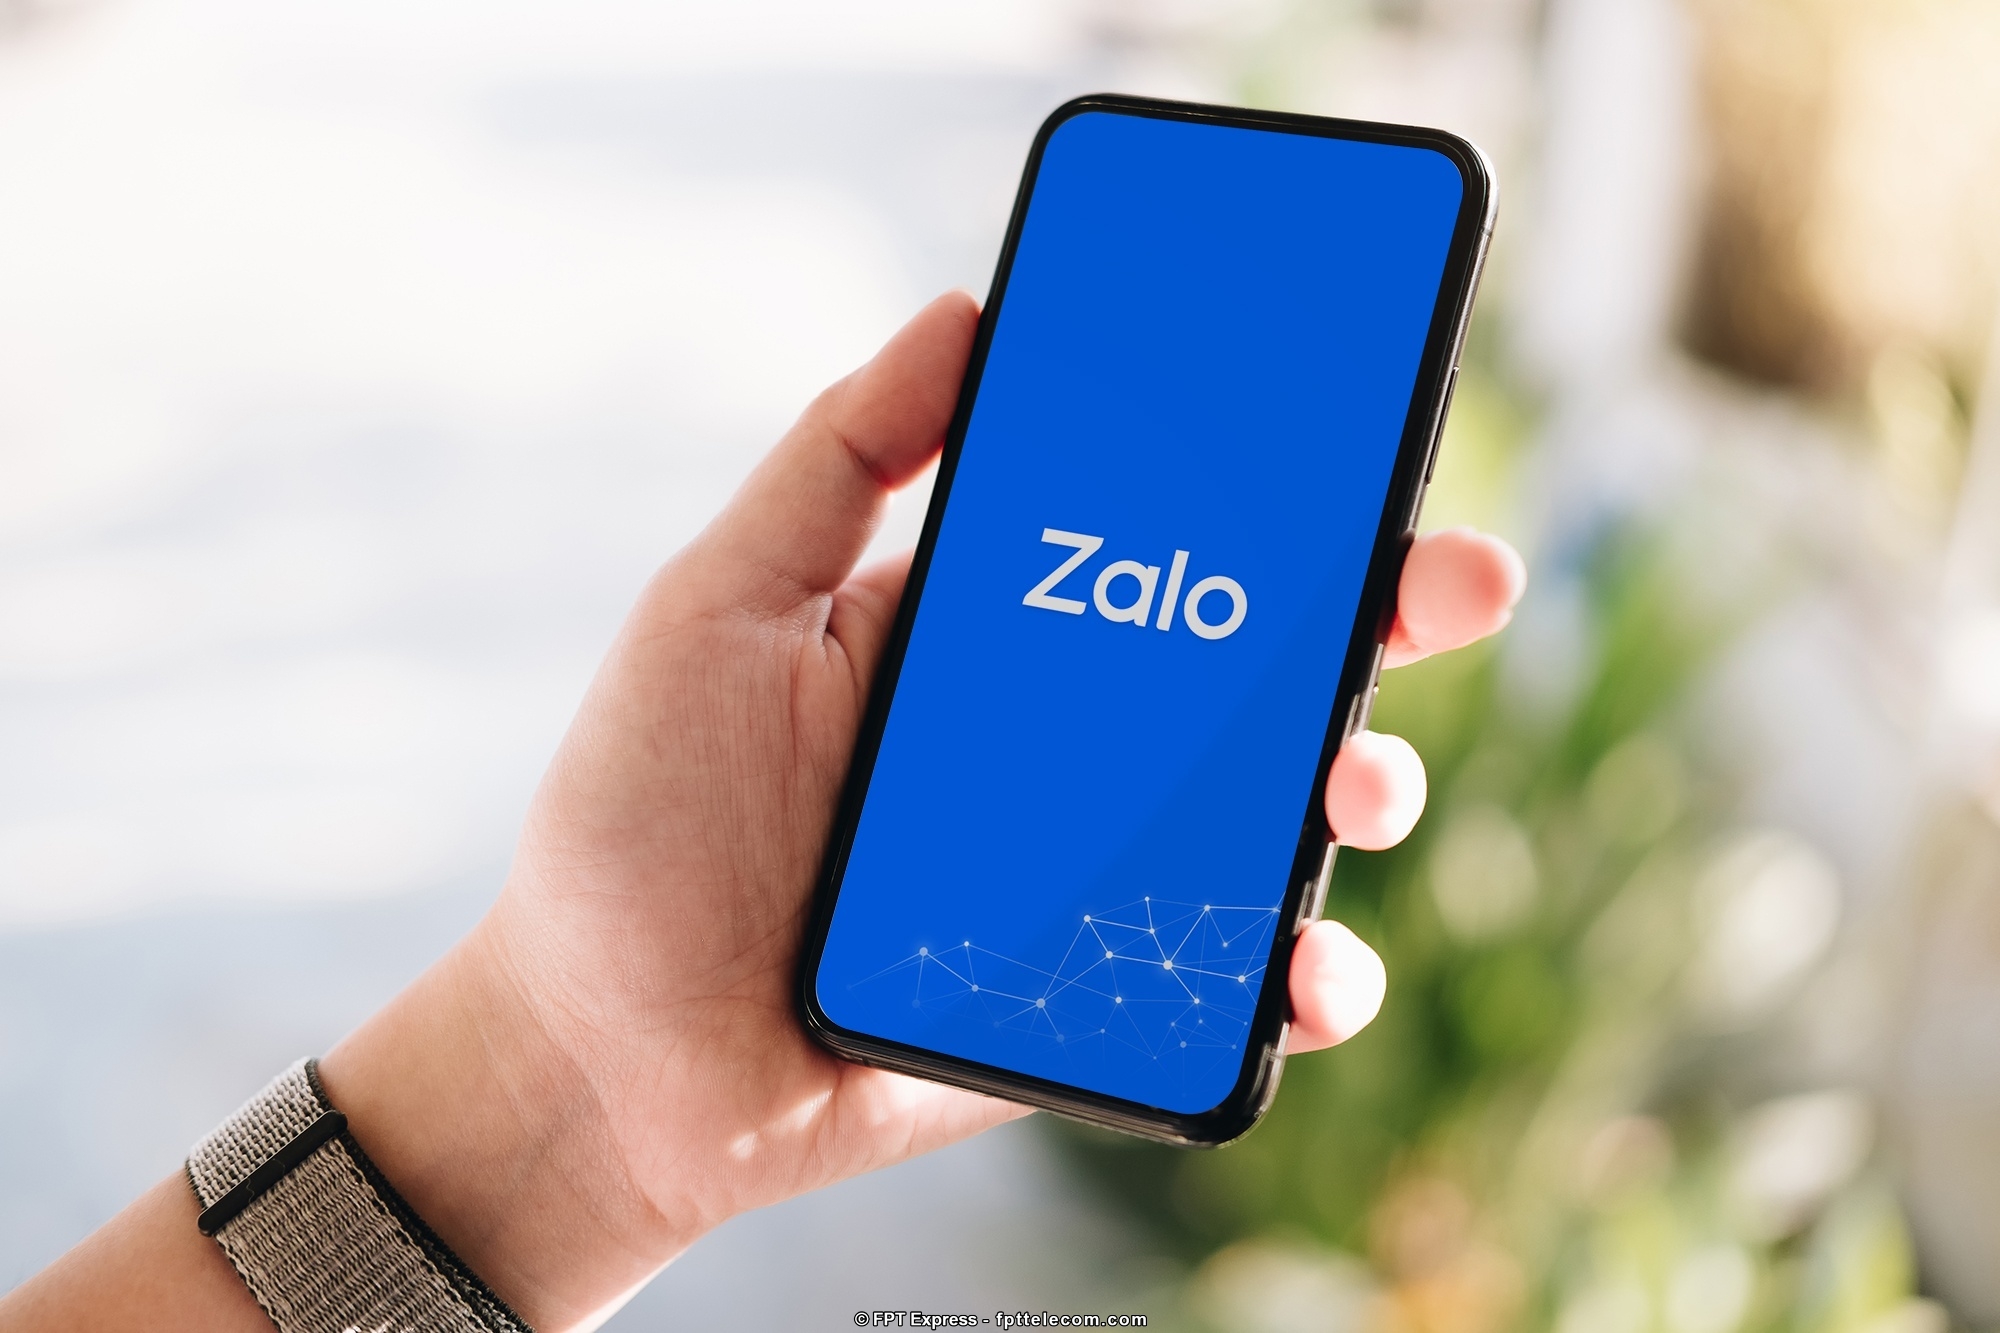 Hướng dẫn quét mã QR trên điện thoại Android bằng ứng dụng Zalo